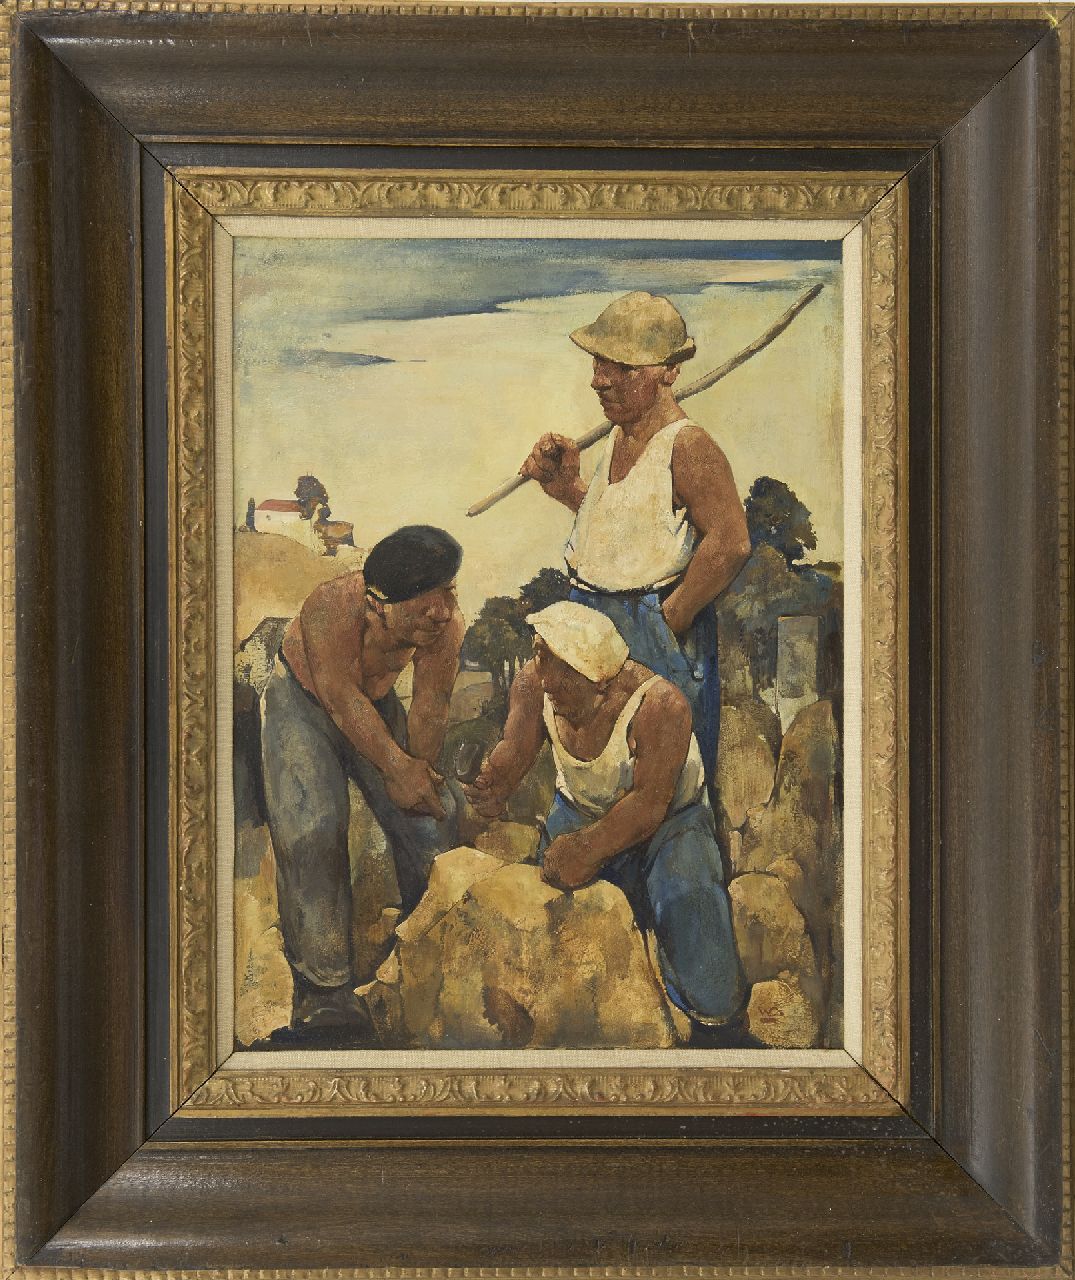 Berg W.H. van den | 'Willem' Hendrik van den Berg | Schilderijen te koop aangeboden | Steenhouwers, olieverf op schildersboard 39,9 x 30,0 cm, gesigneerd rechtsonder met initiaal